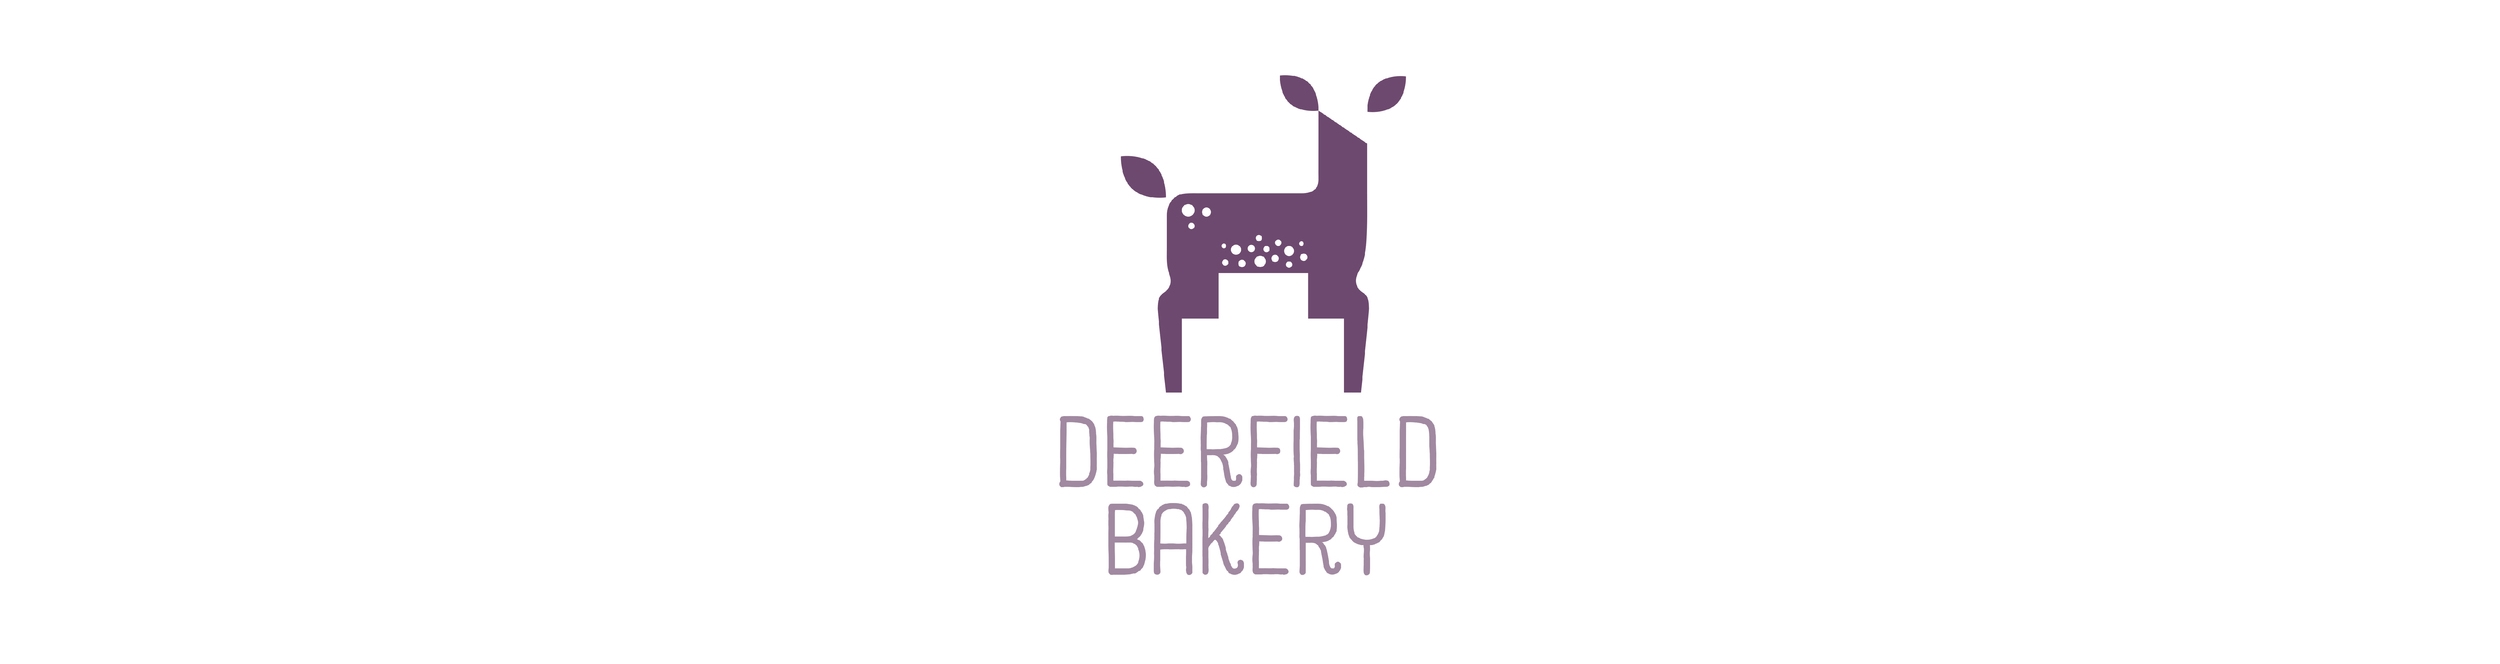 logo deerfield -01.jpg